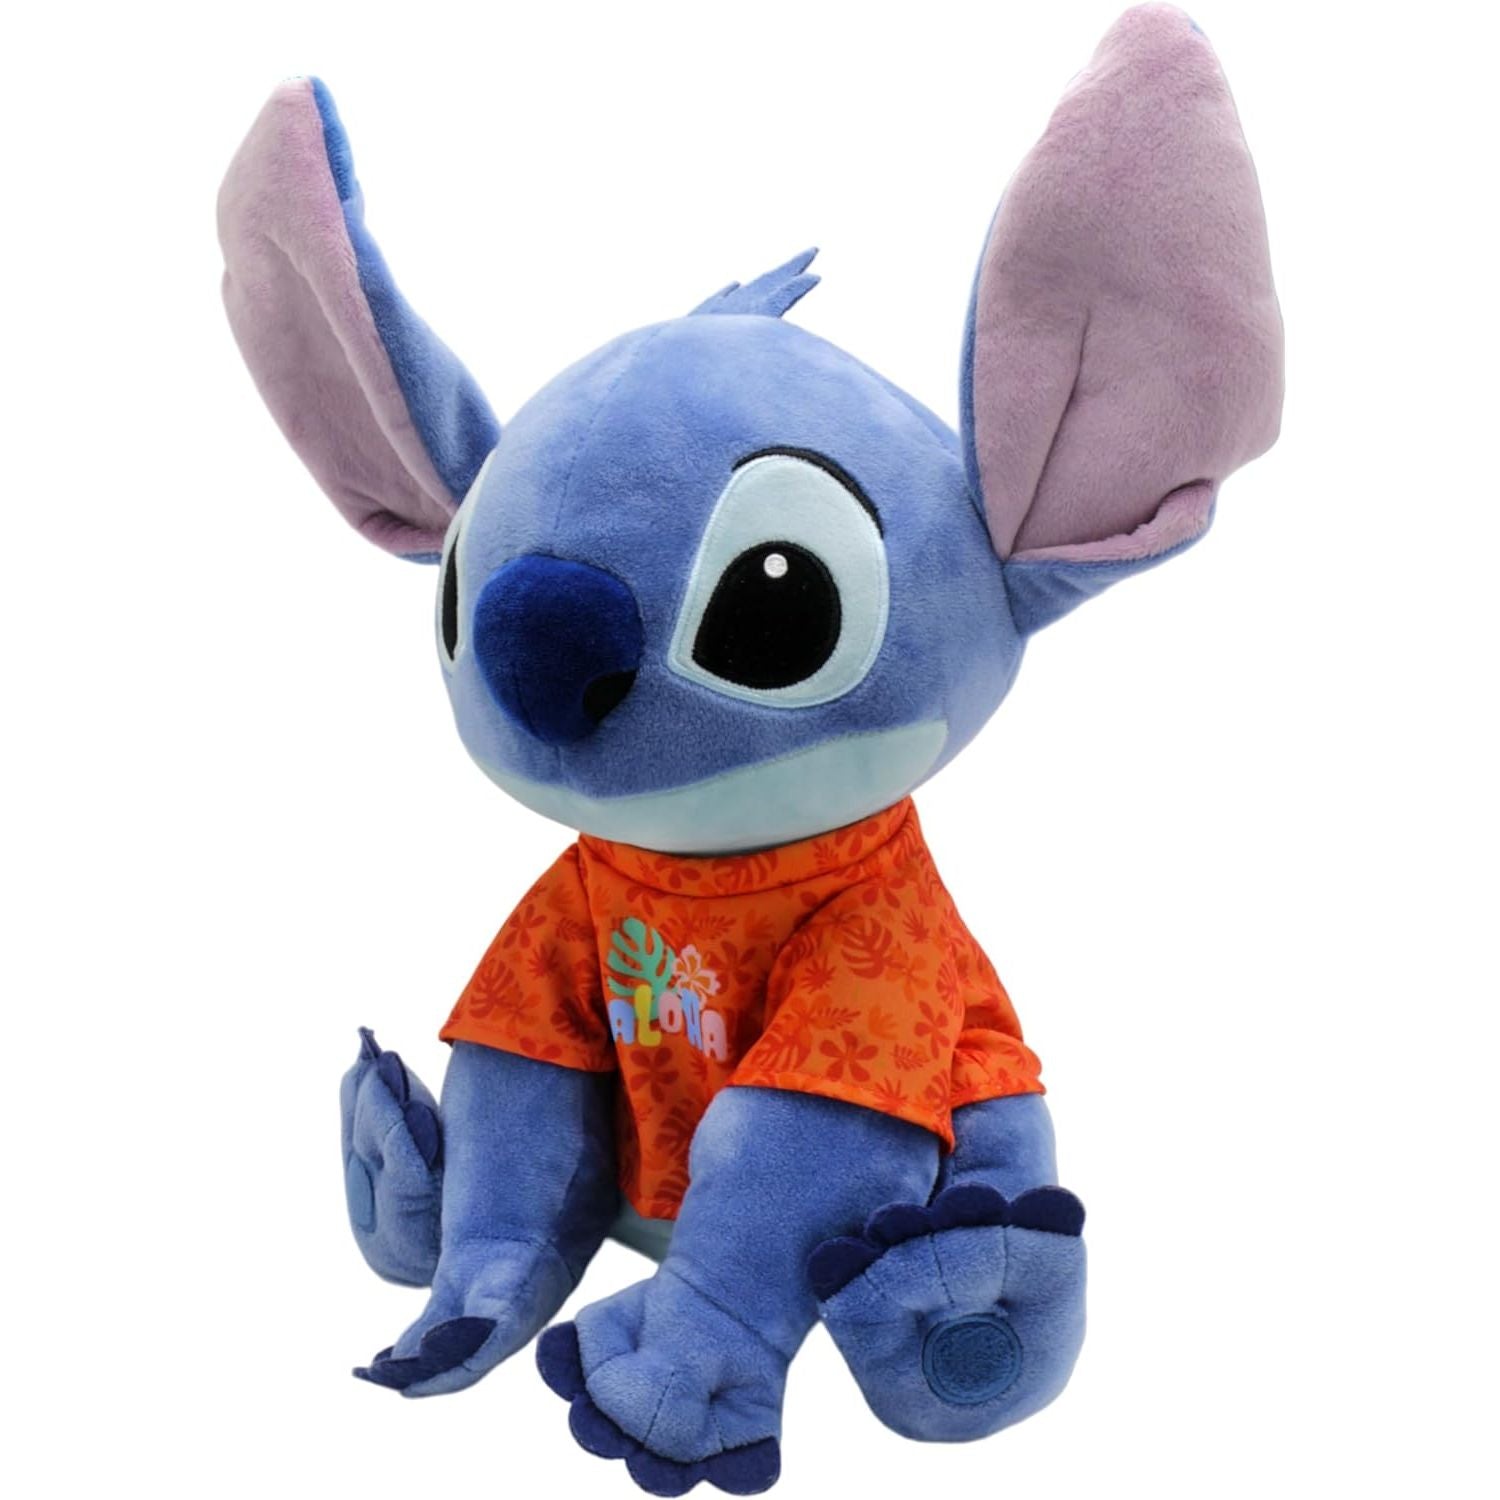 Disney - Lilo & Stitch - Stitch with T-Shirt Plush - 15 Inch